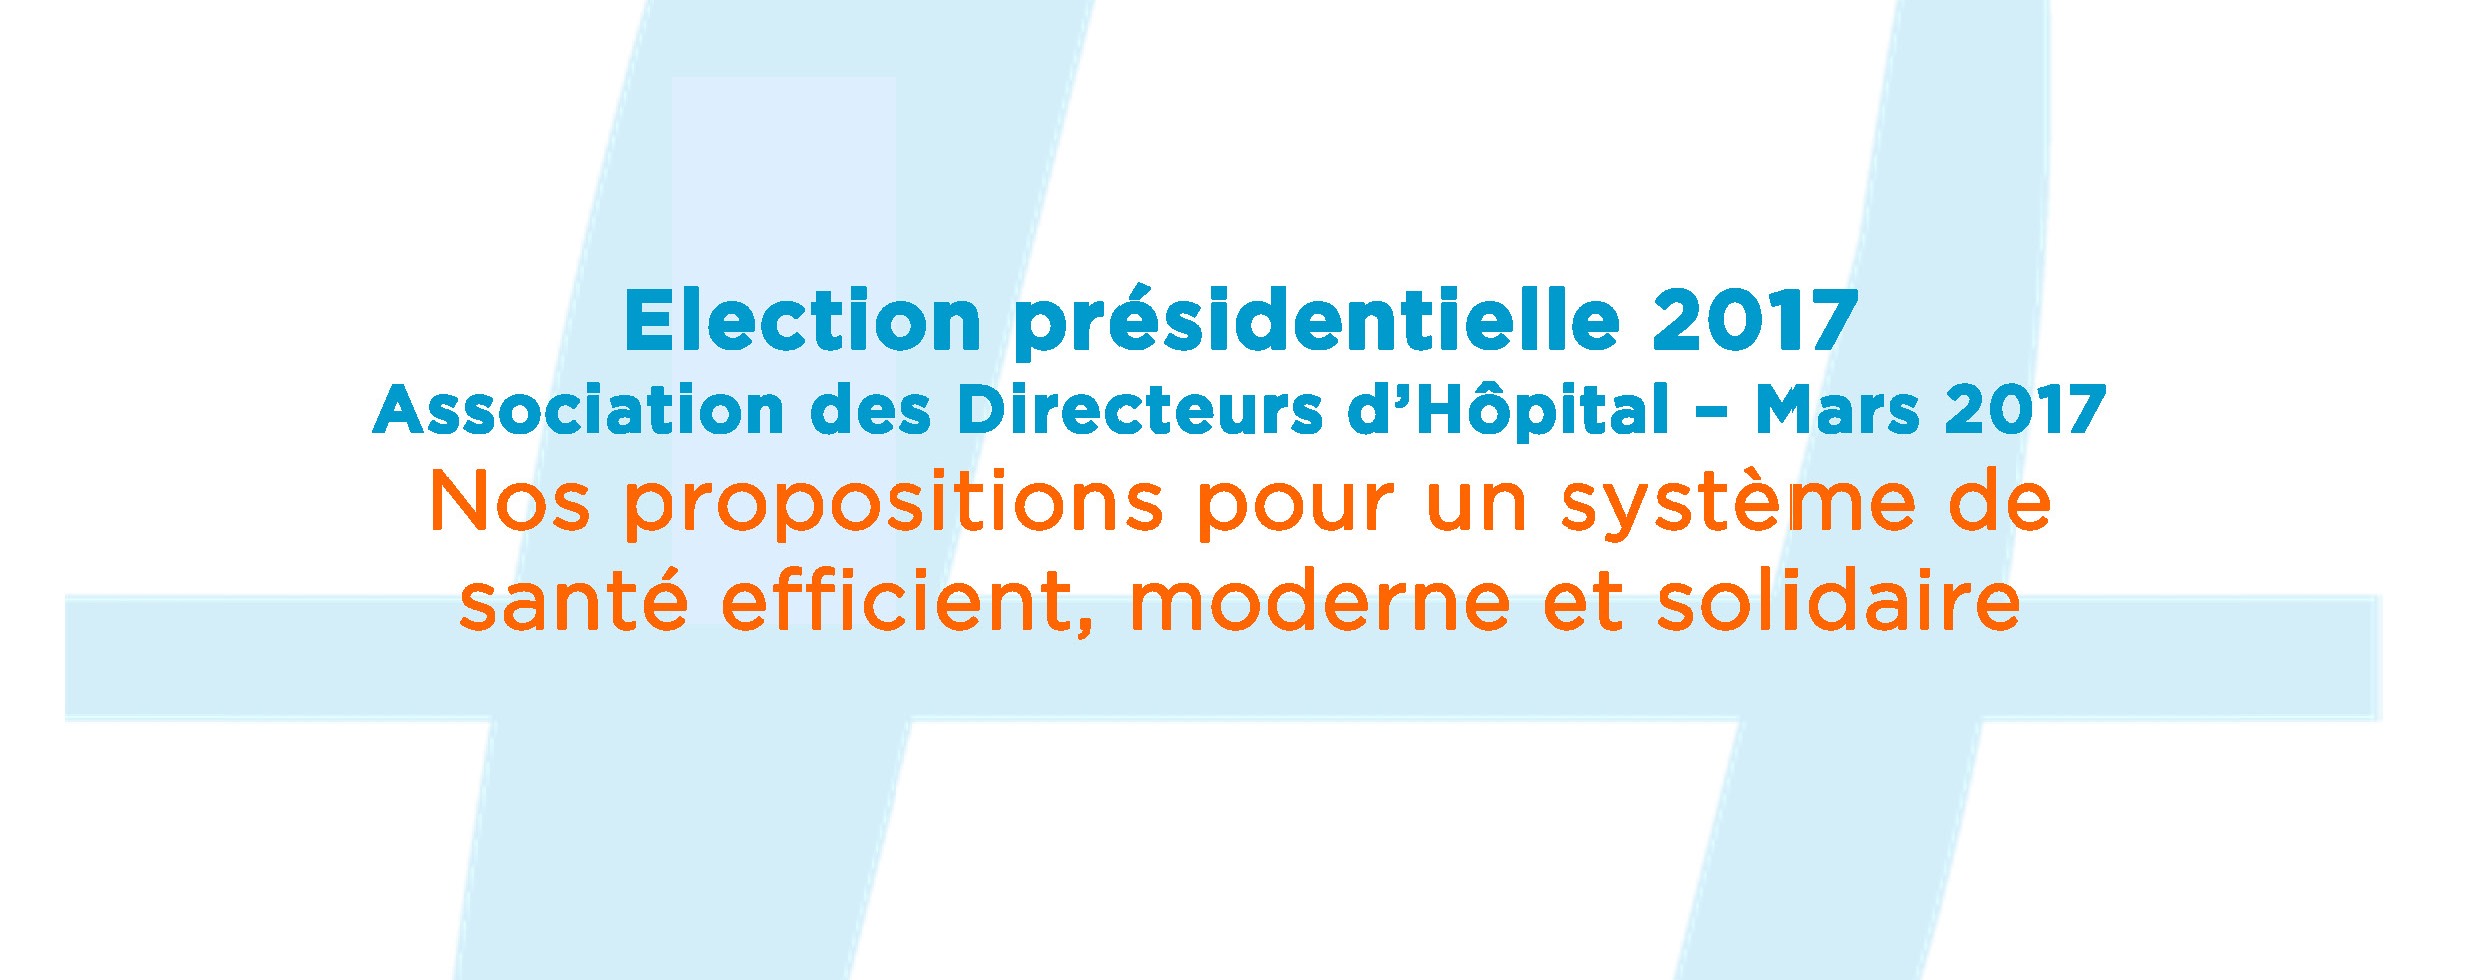 Election présidentielle 2017 – Nos propositions pour un système de santé efficient, moderne et solidaire